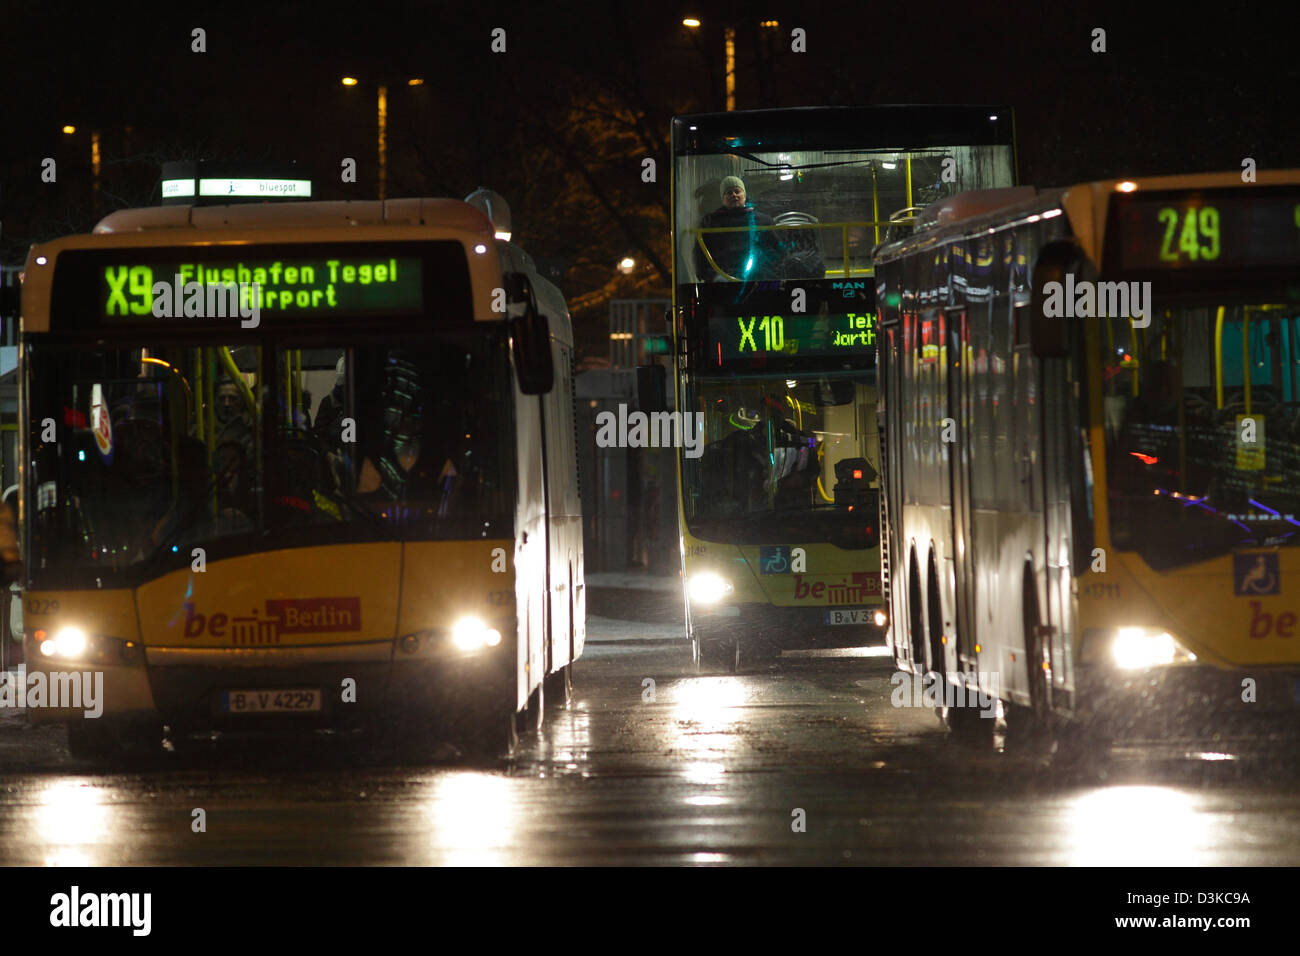 Berlin, Deutschland, BVG Bus-Linie, X9, X10 und 249 Stockfotografie - Alamy